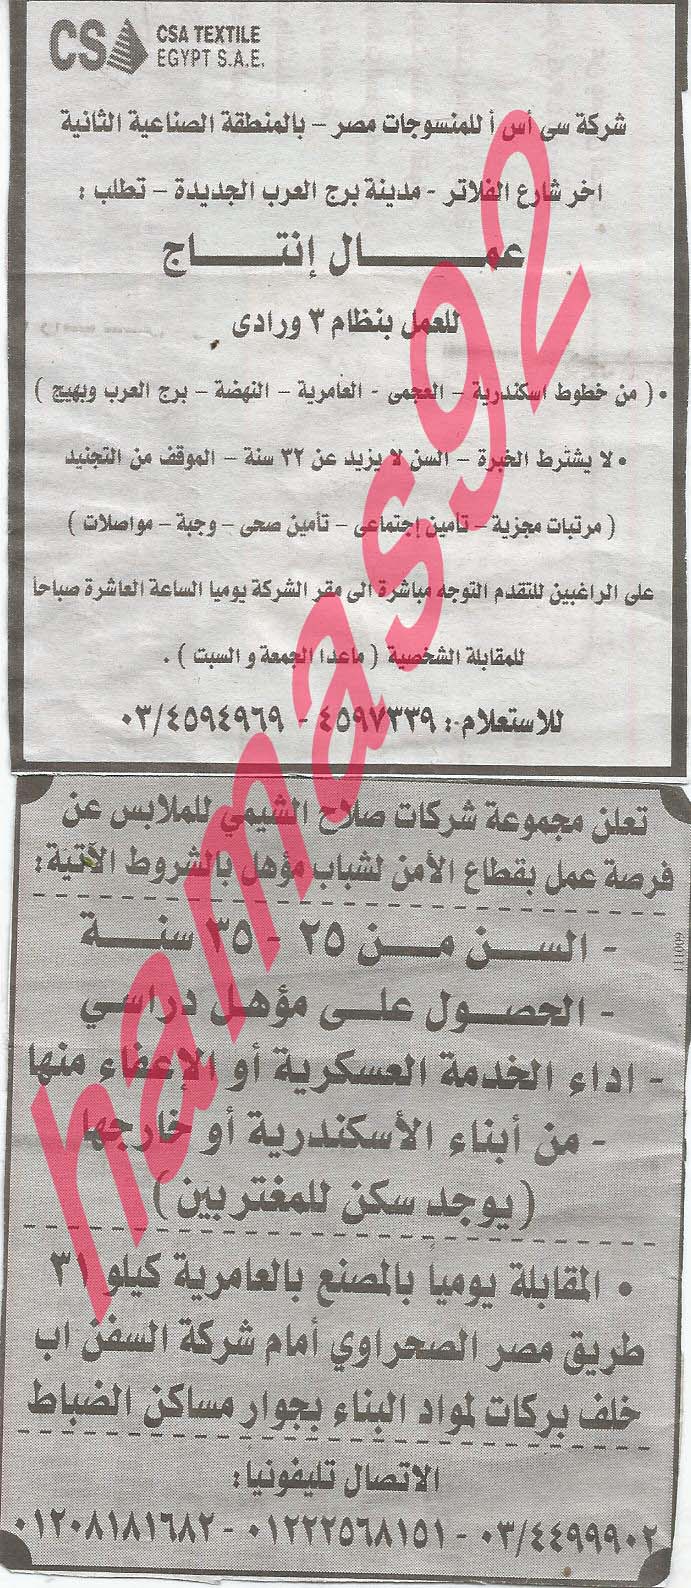 وظائف خالية فى جريدة الوسيط الاسكندرية الجمعة 06-09-2013 %D9%88+%D8%B3+%D8%B3+7